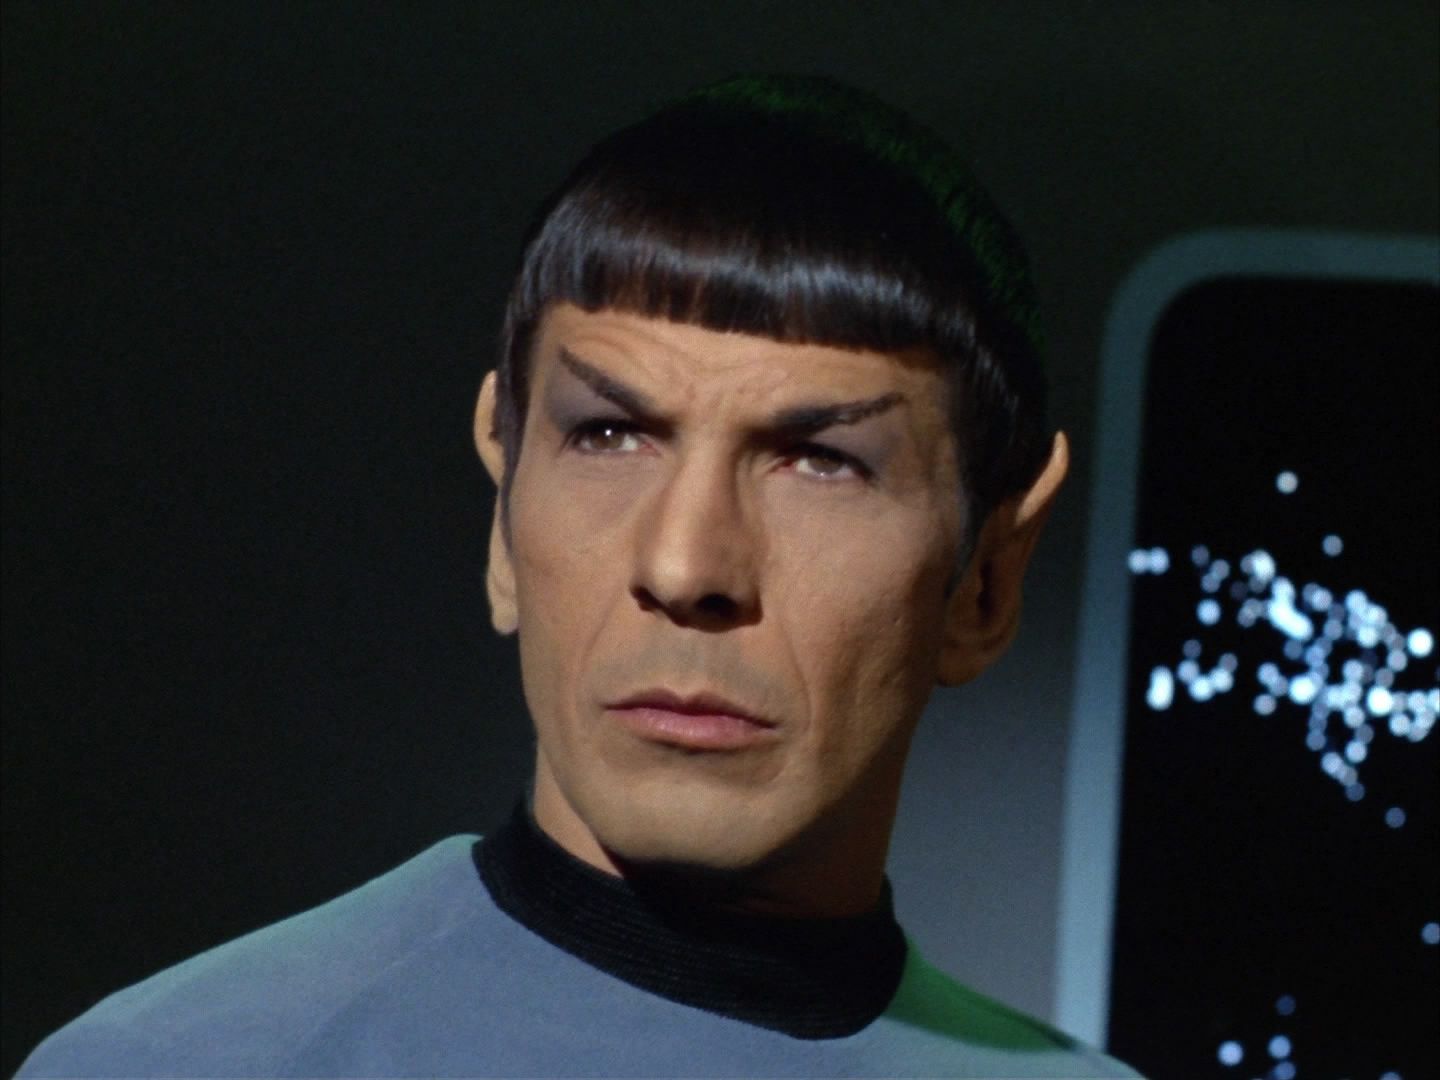 Spock_2267.jpg